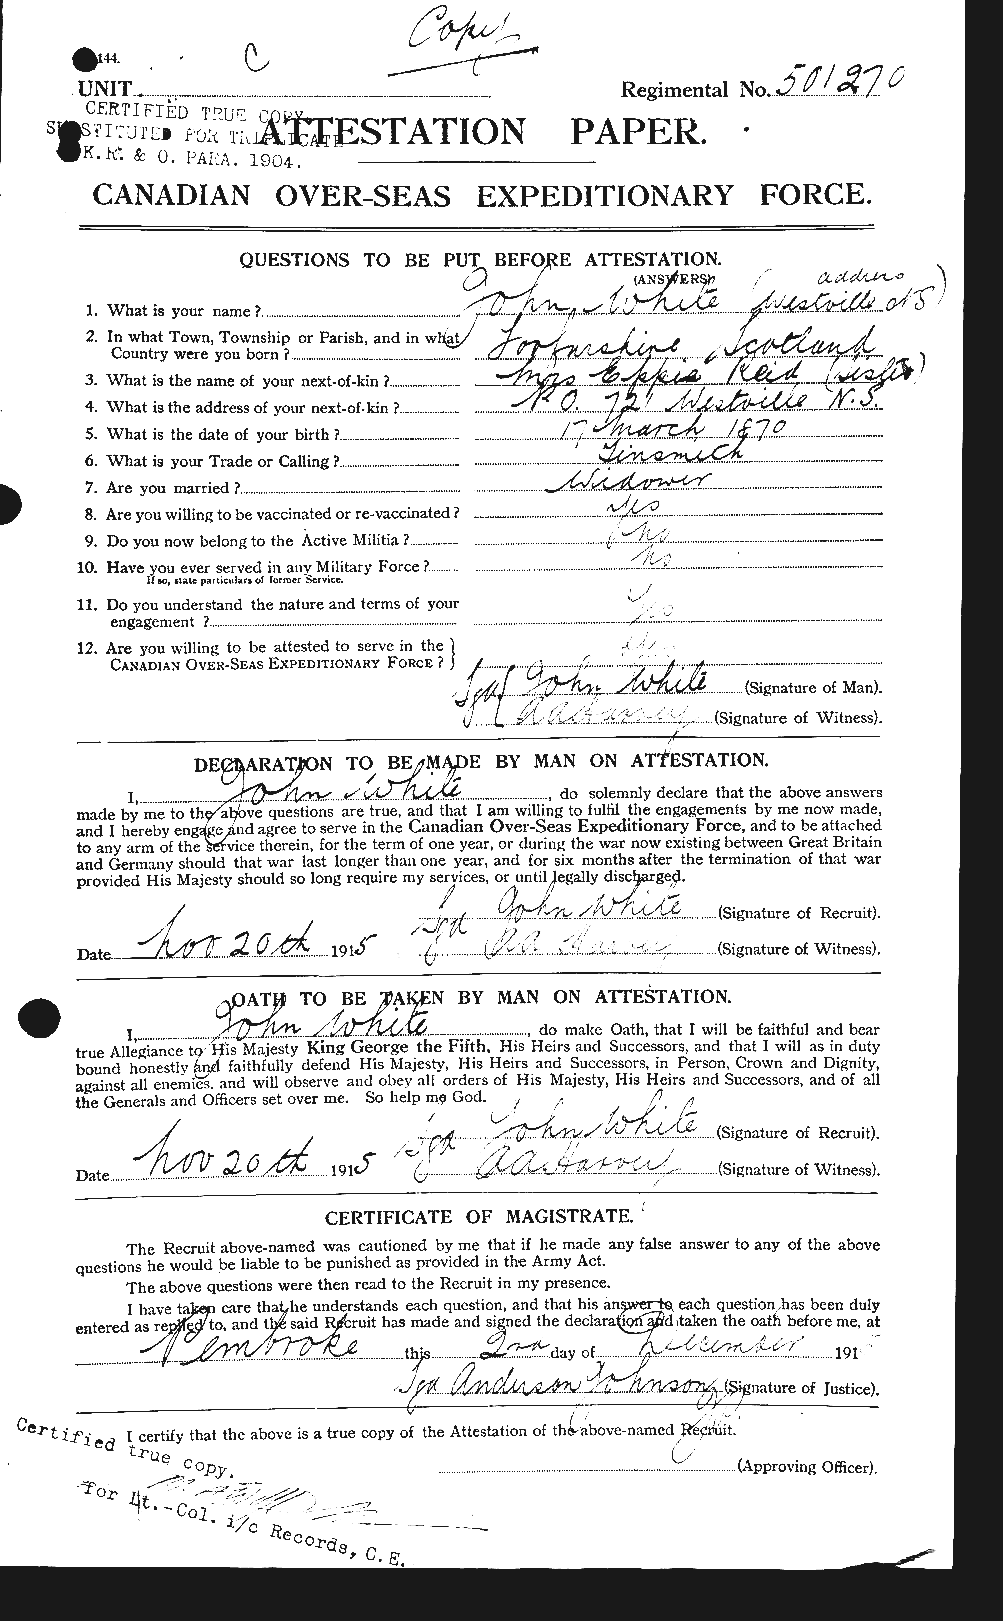 Dossiers du Personnel de la Première Guerre mondiale - CEC 671499a